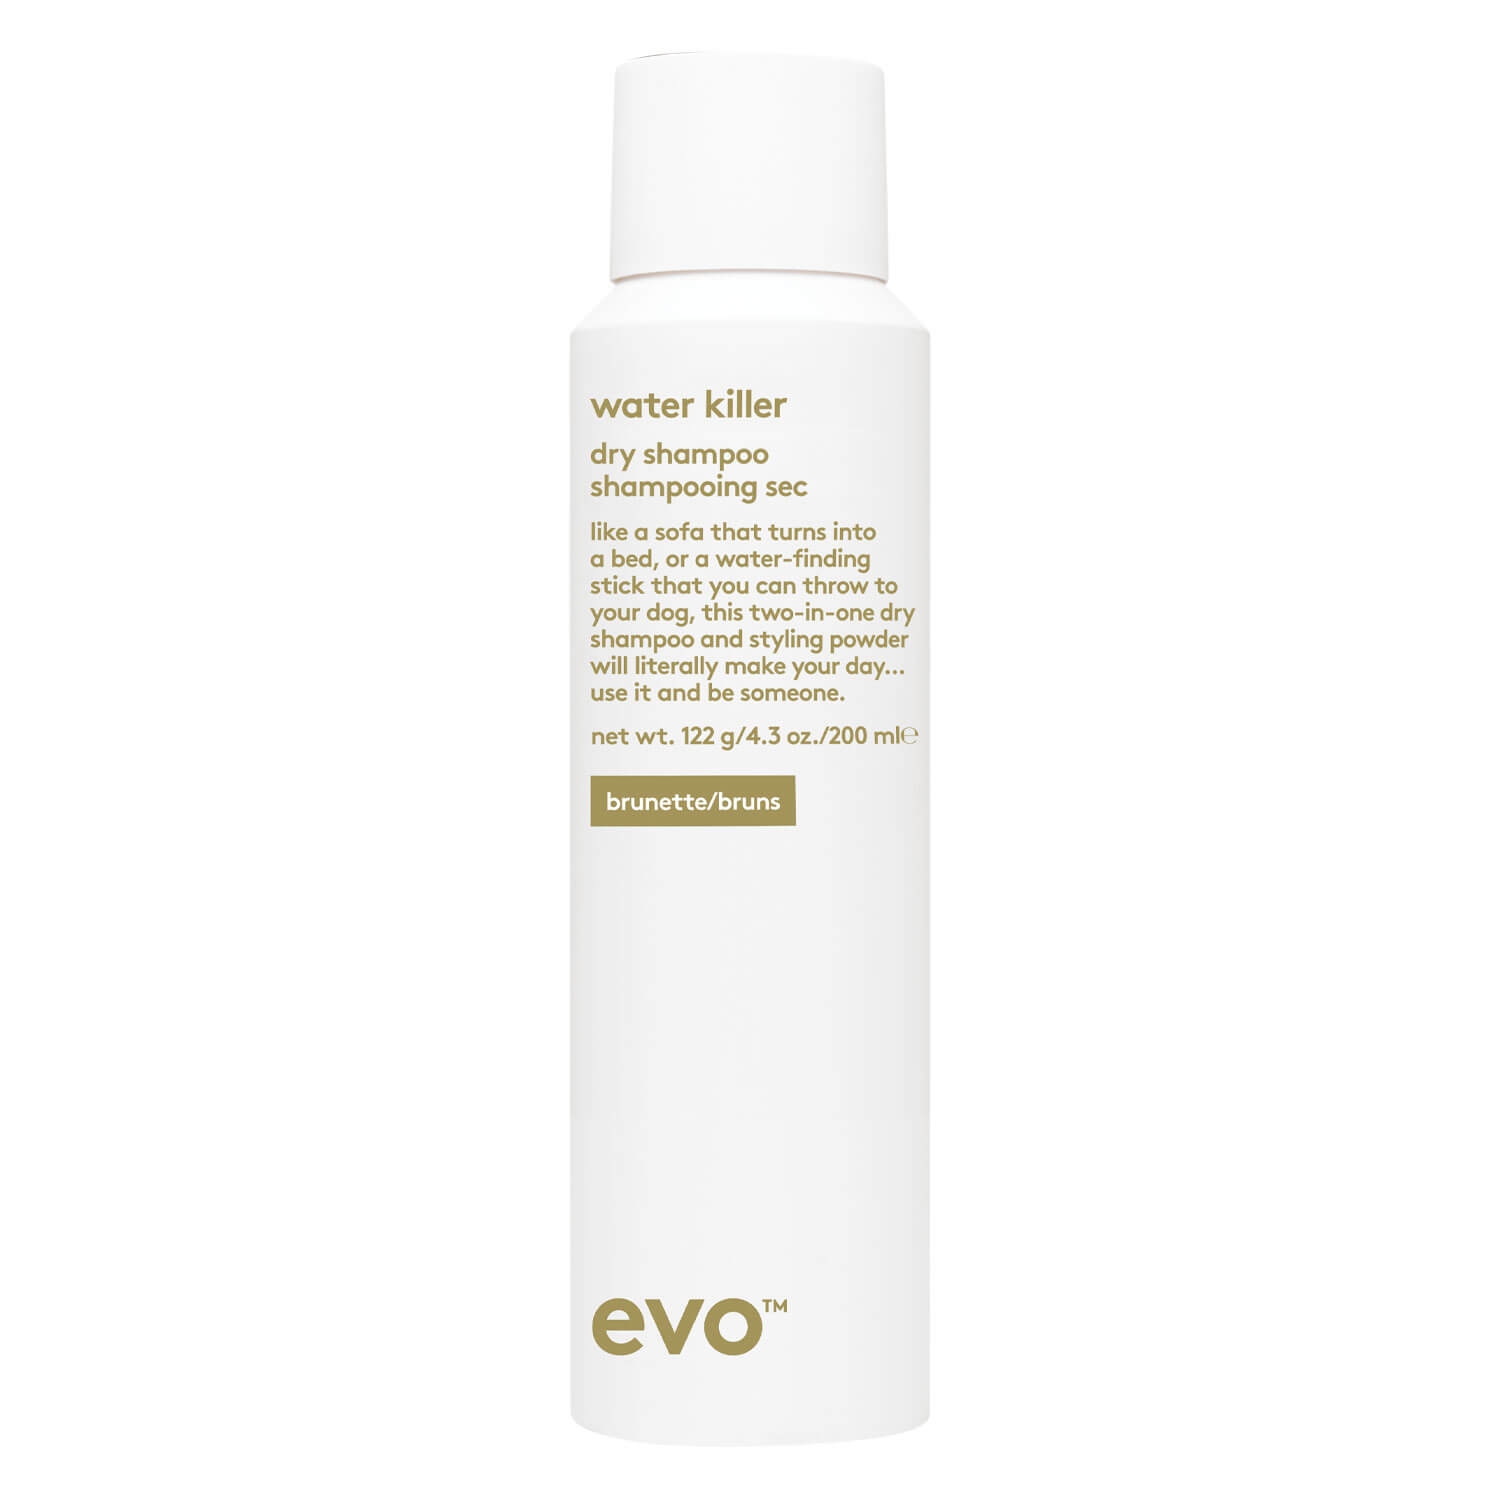 Produktbild von evo style - water killer dry shampoo brunette